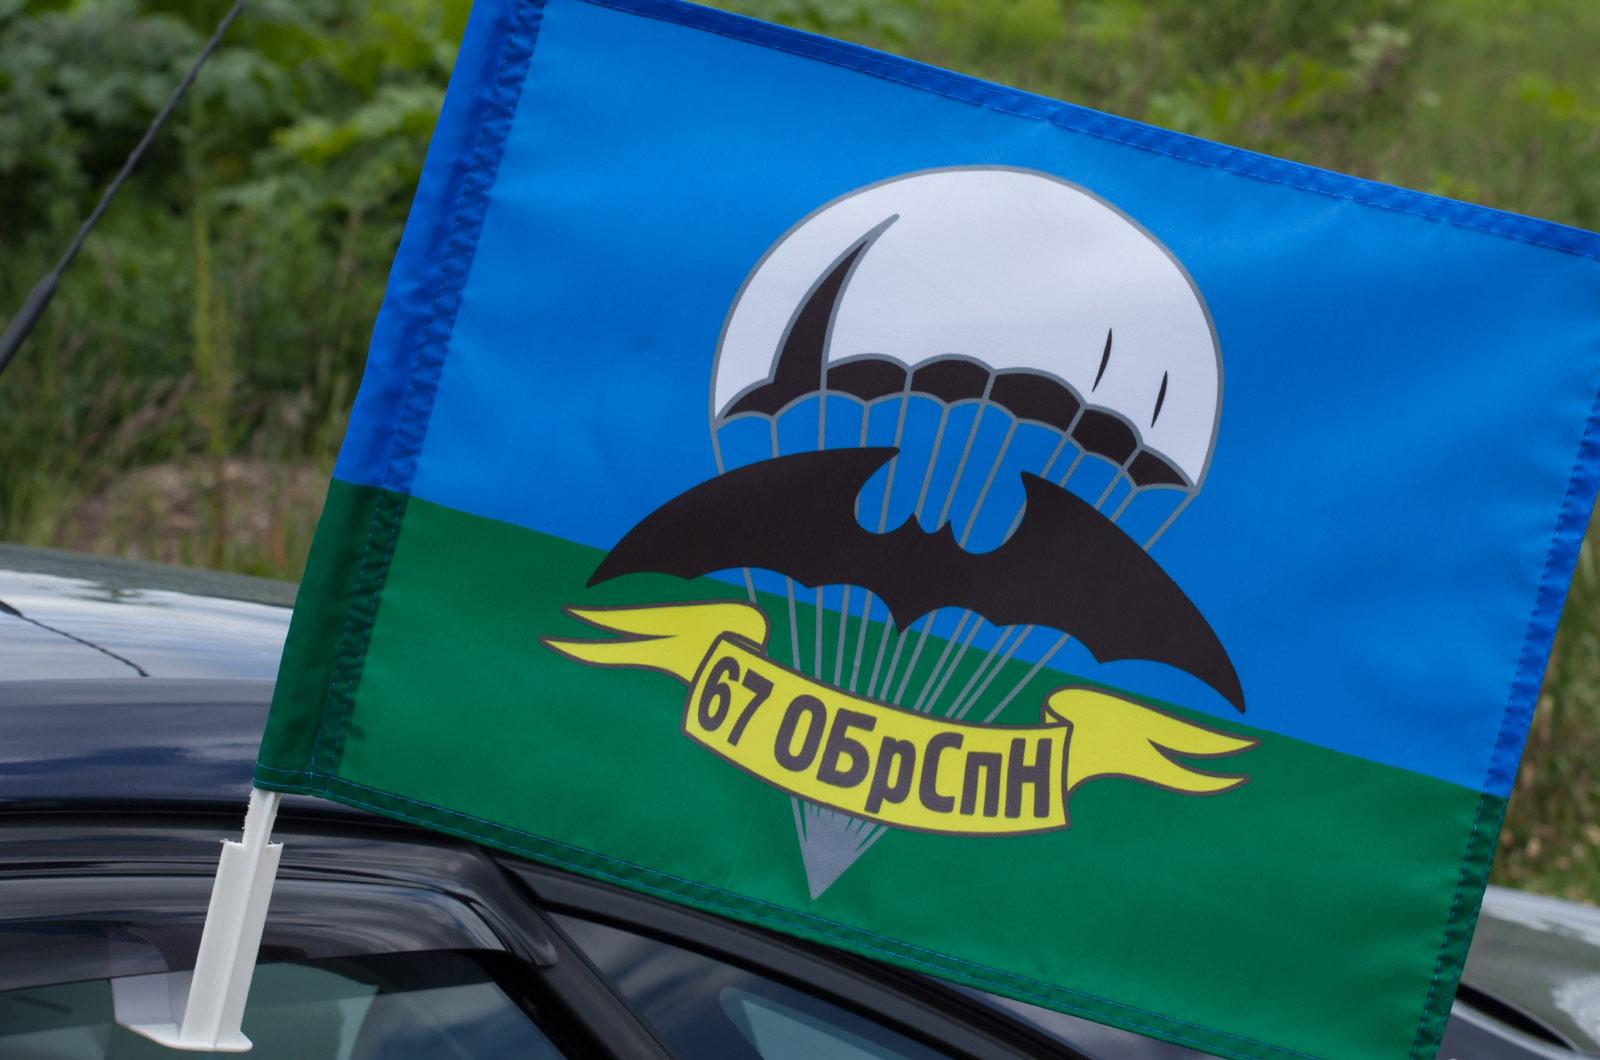 Флаг на машину с кронштейном 67 ОБрСпН